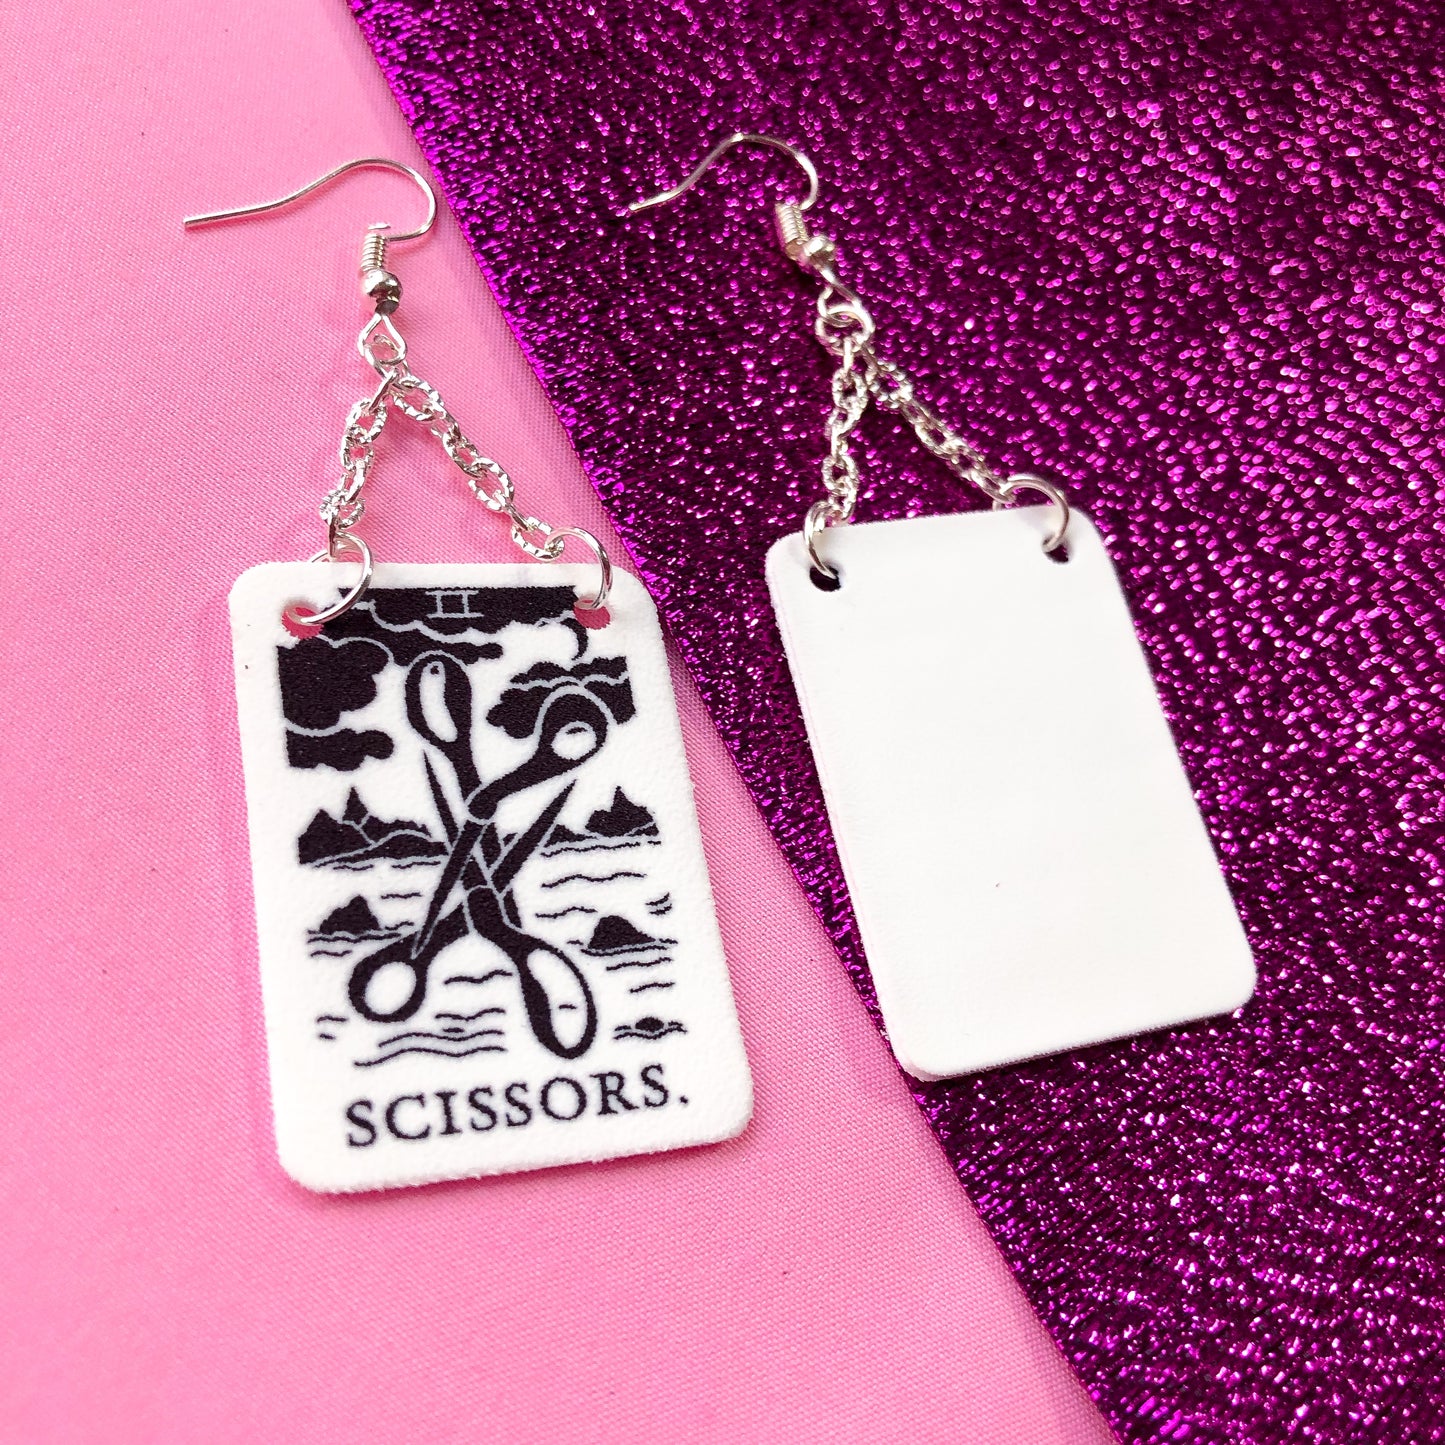 Two of scissors tarot card earrings